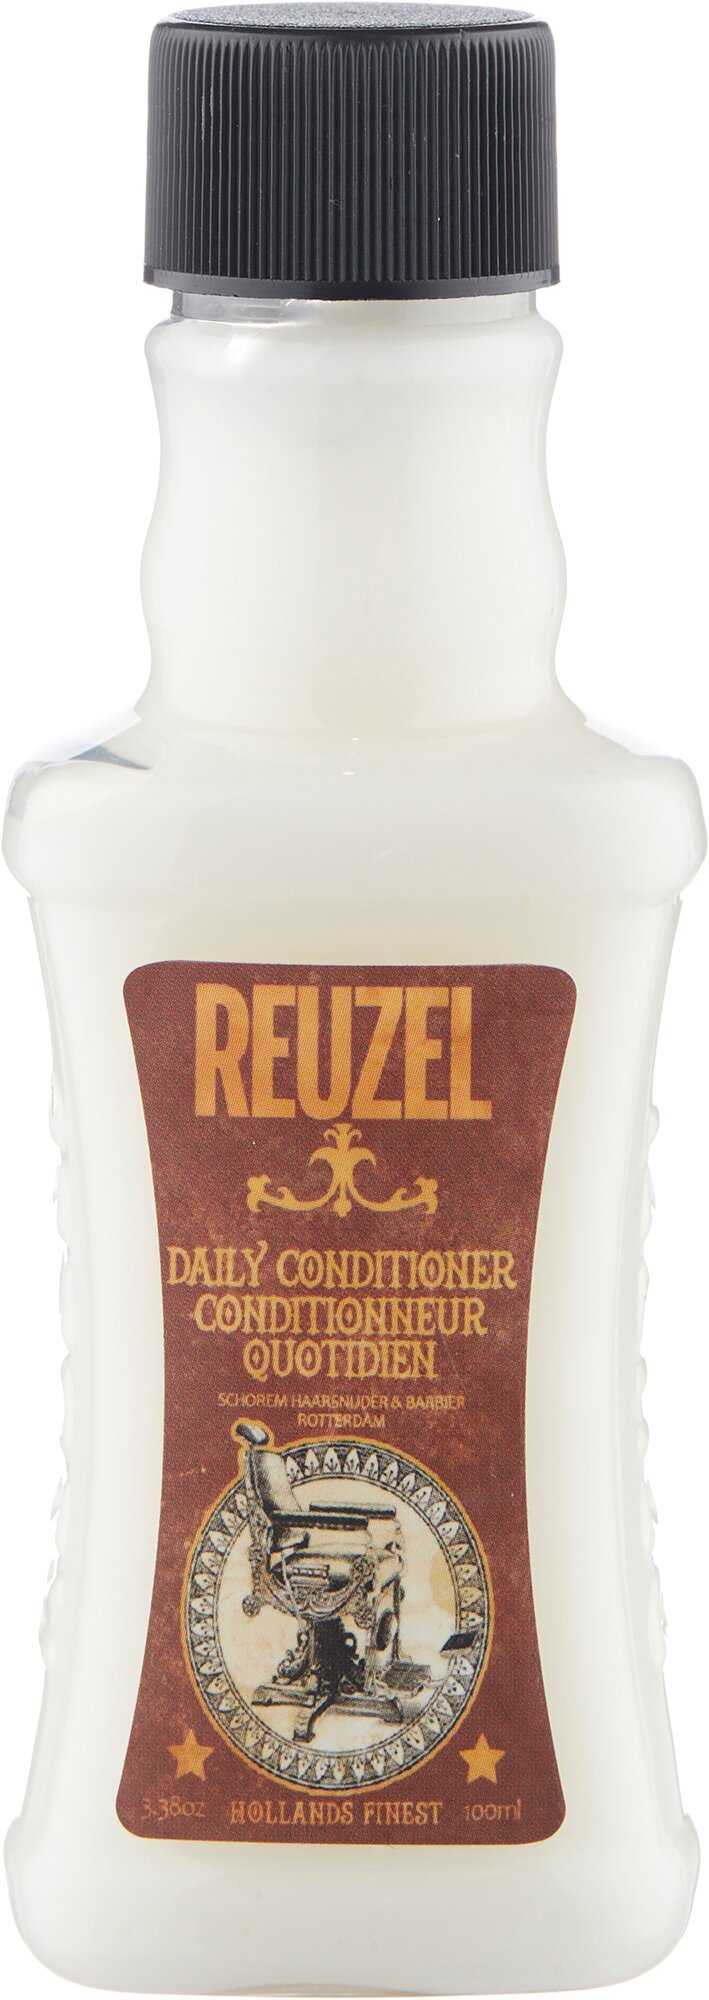 REUZEL кондиционер для волос Daily Conditioner, 100 мл